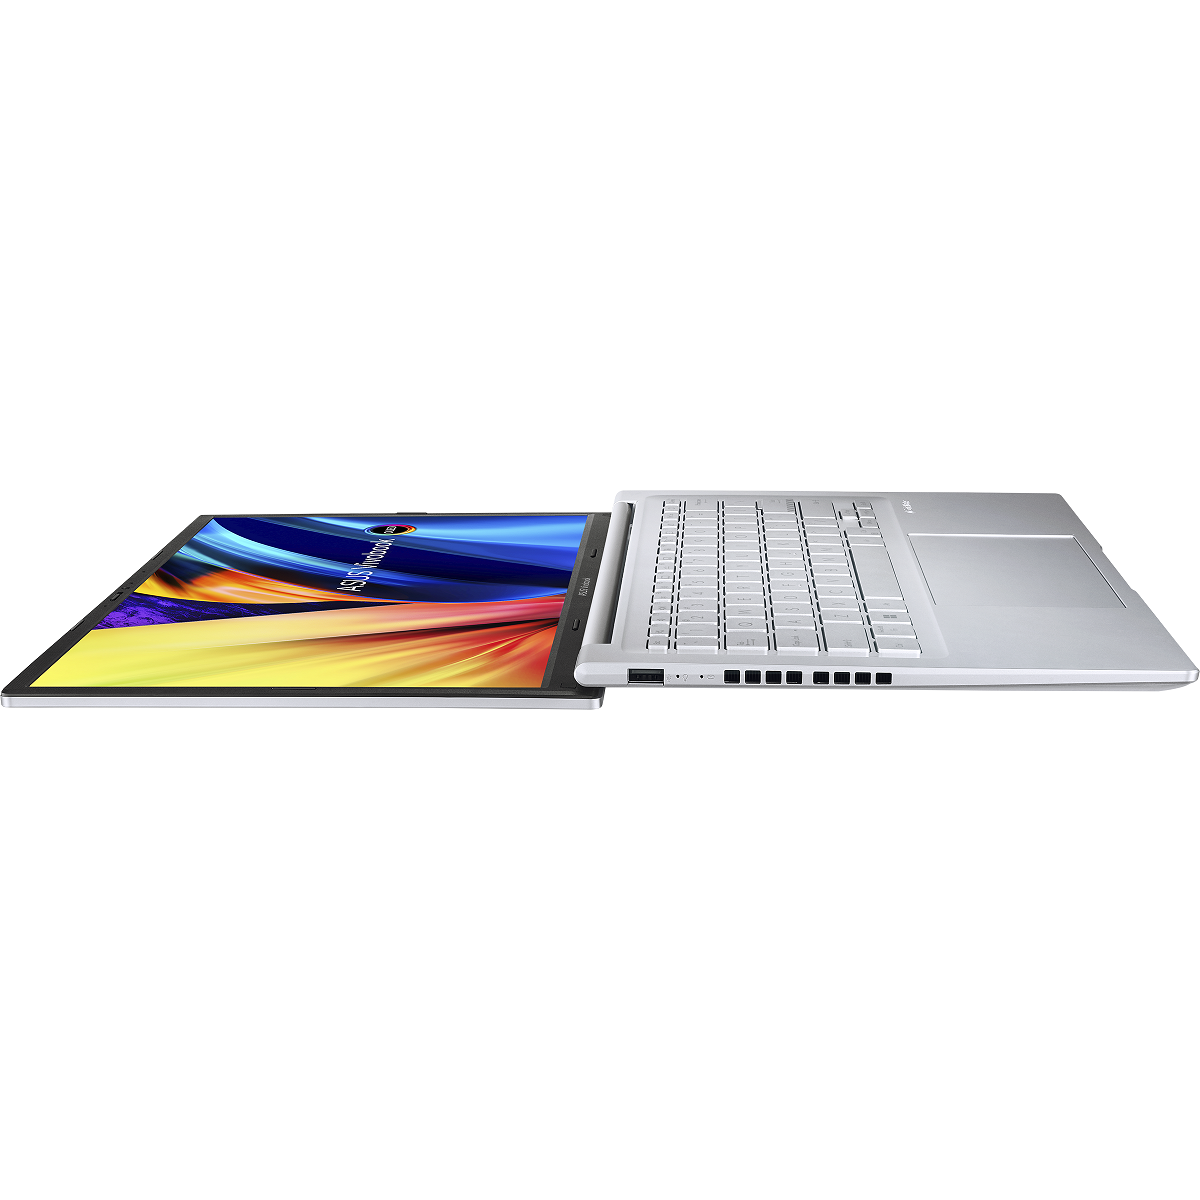 Vivobook 14X/15X OLED - laptop mạnh mẽ, thời trang cho thế hệ Z đón mùa tựu trường - Vivobook 14X OLED X1403 M1403 Product Photo 1S Transparent Silver 18